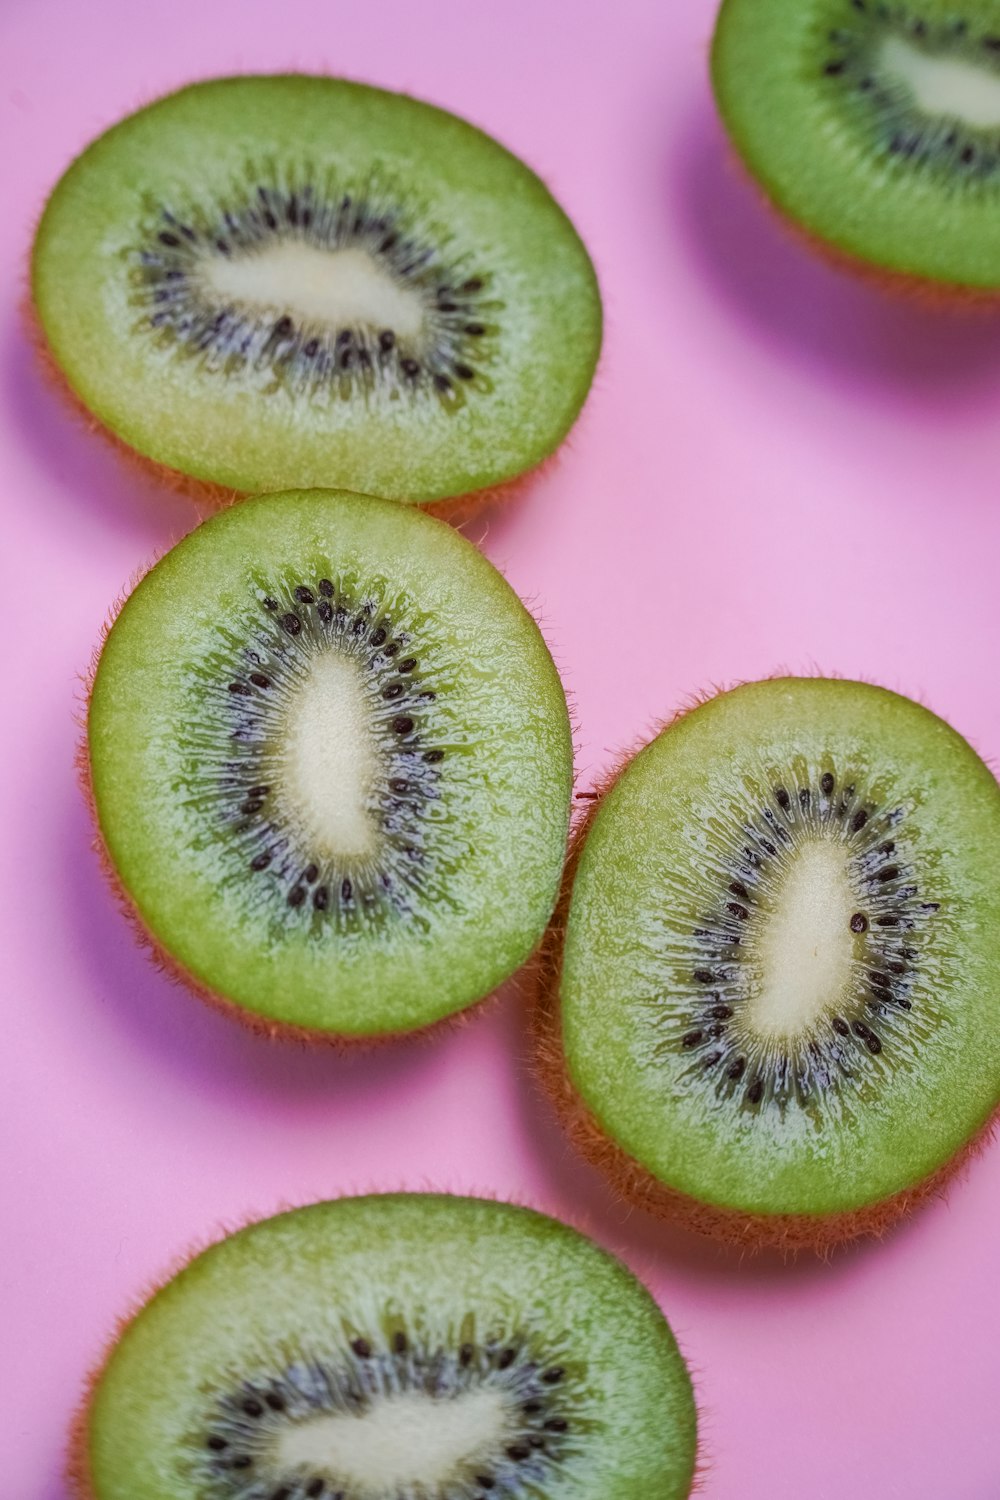 녹색과 분홍색 얇게 썬 과일